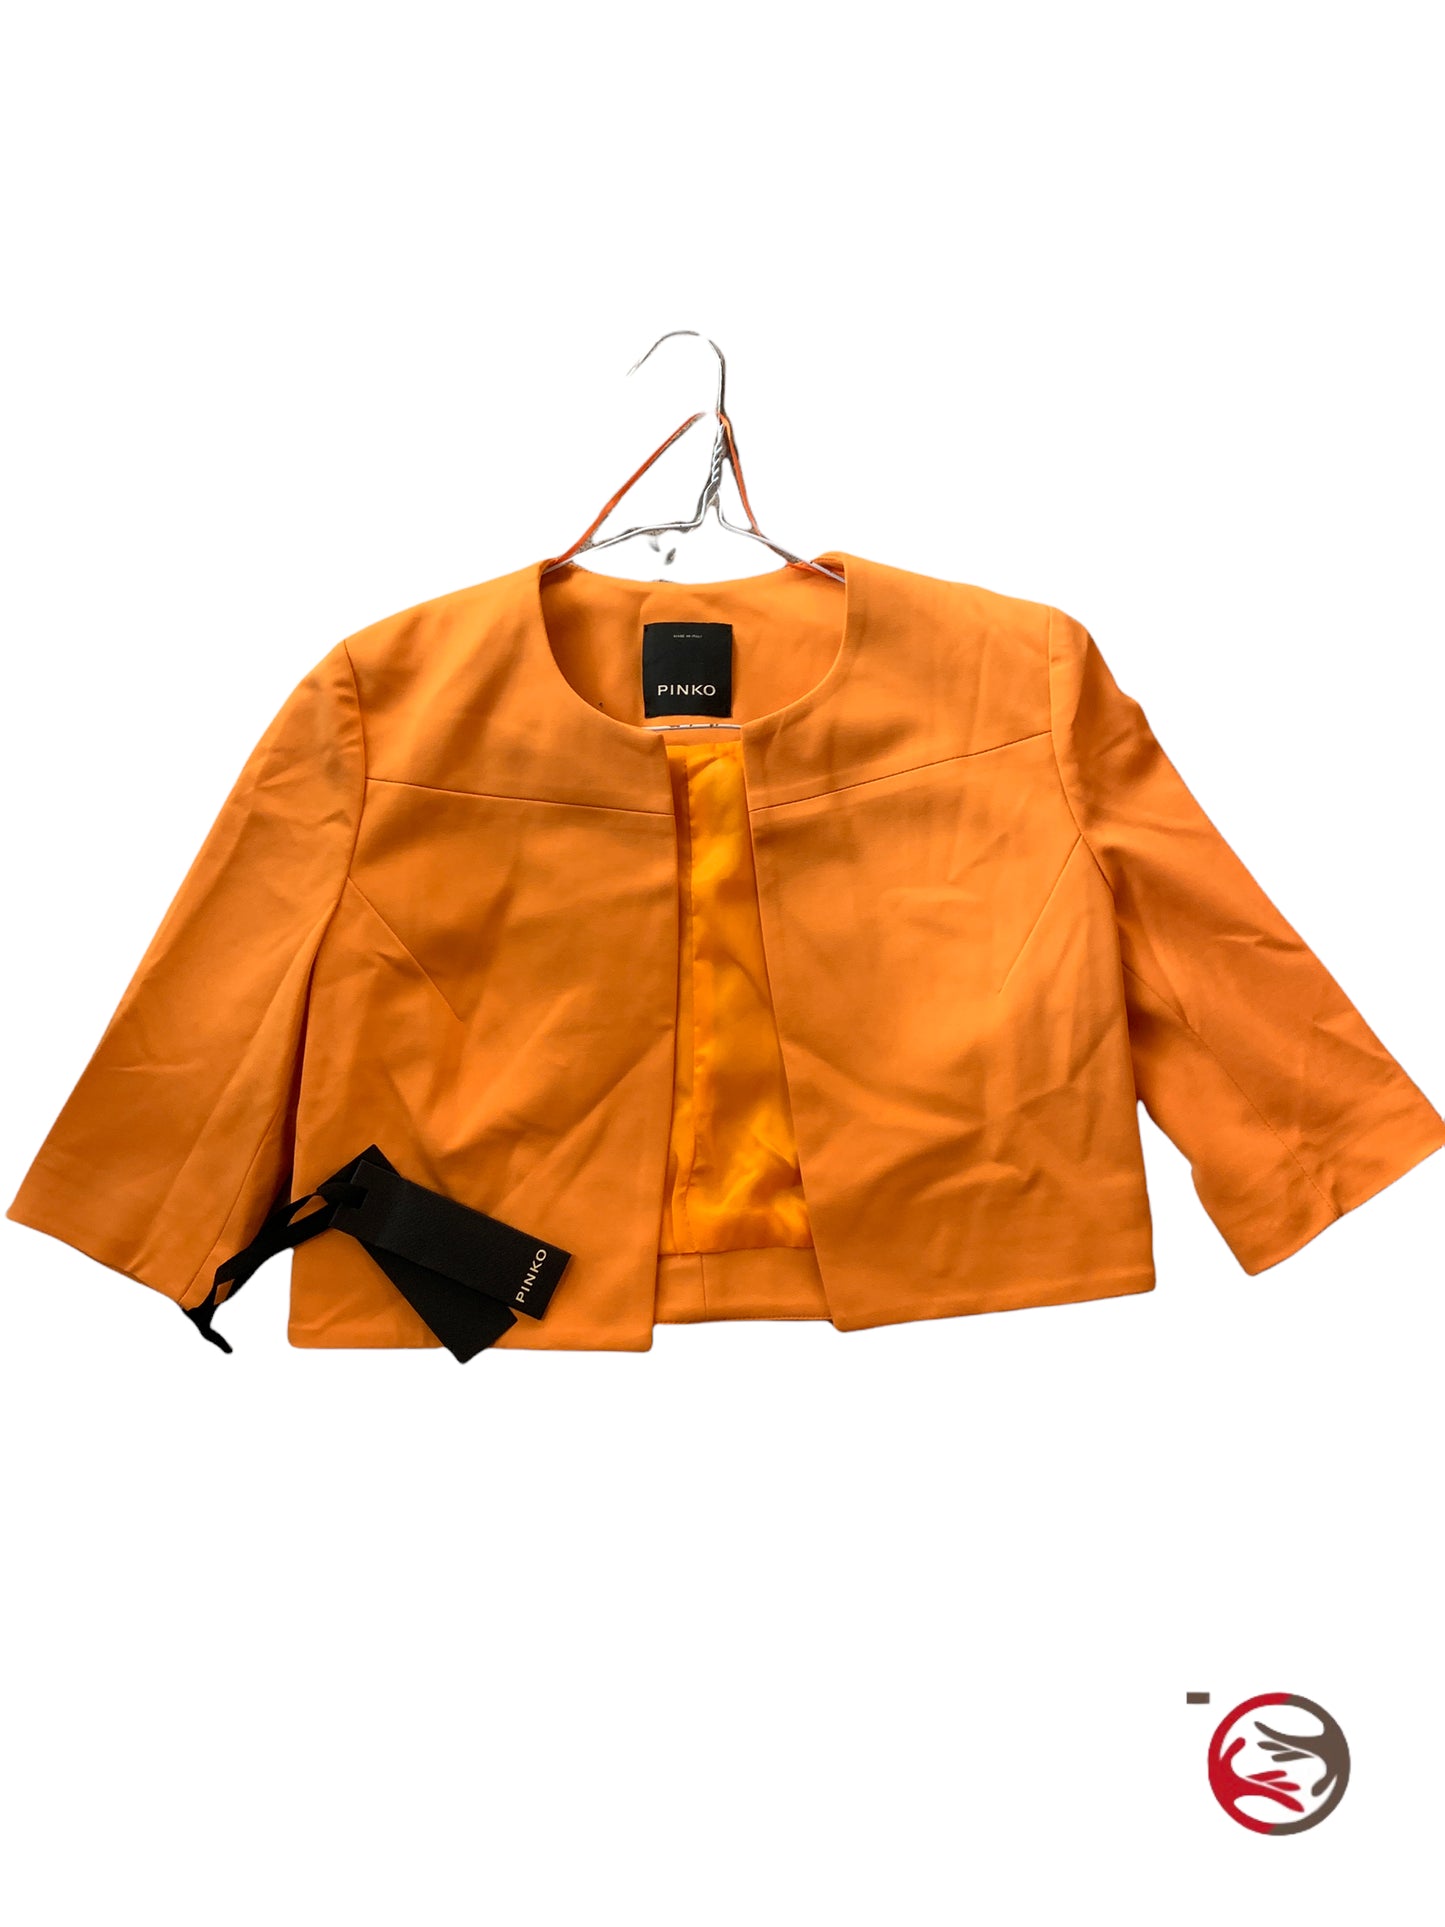 Giacca Pinko nuova donna L arancio blazer corto copri spalle